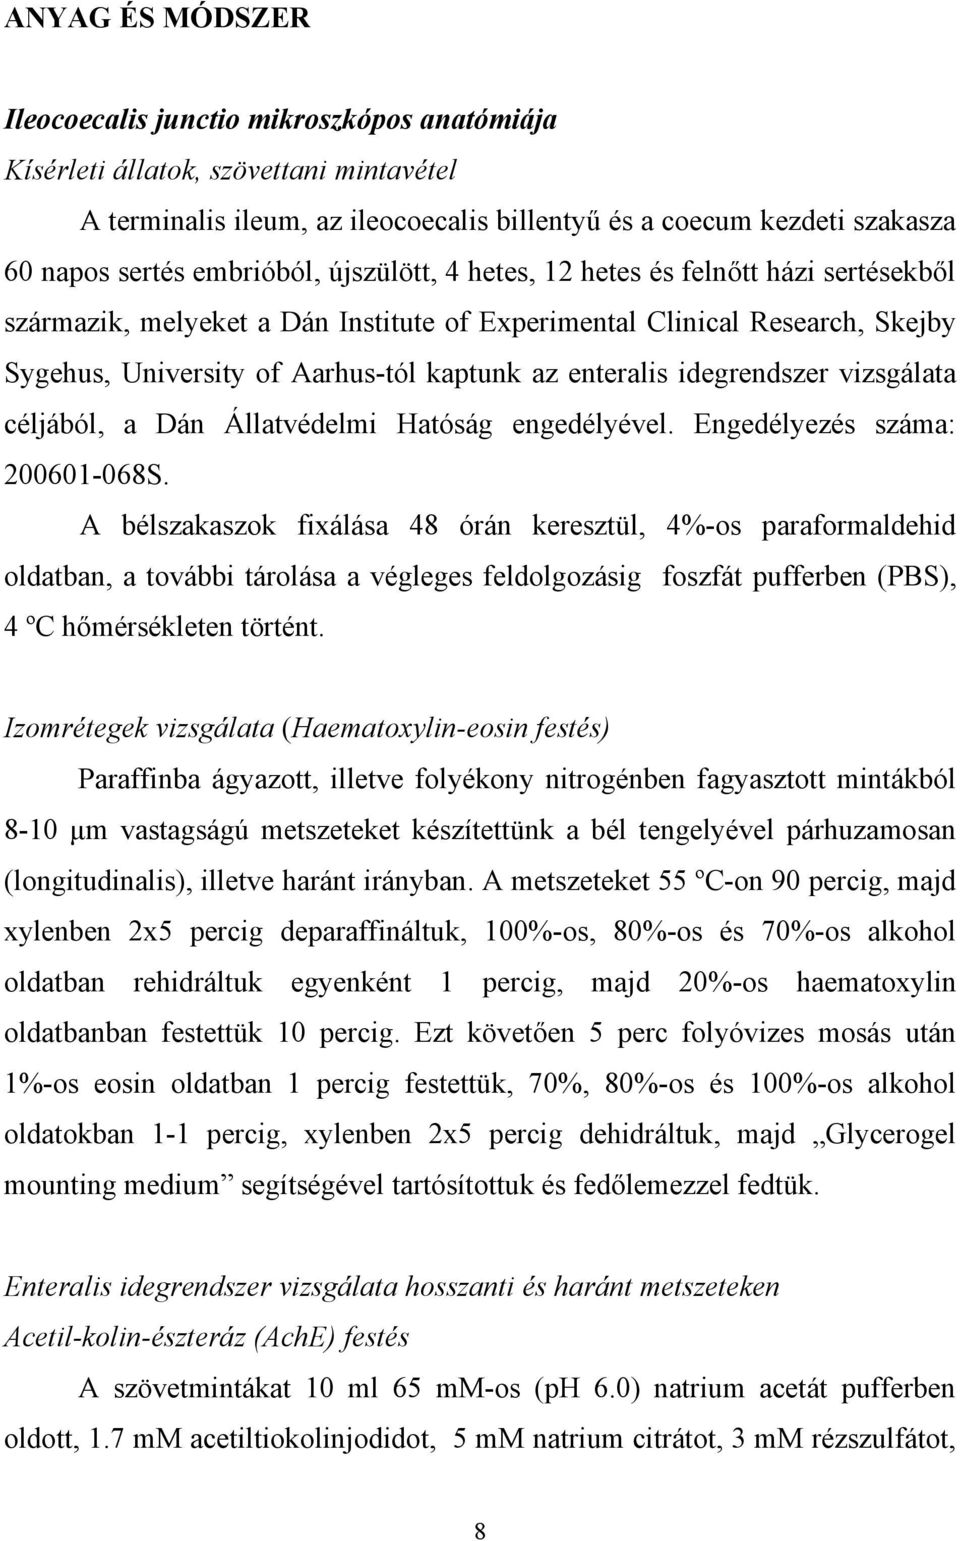 enteralis idegrendszer vizsgálata céljából, a Dán Állatvédelmi Hatóság engedélyével. Engedélyezés száma: 200601-068S.